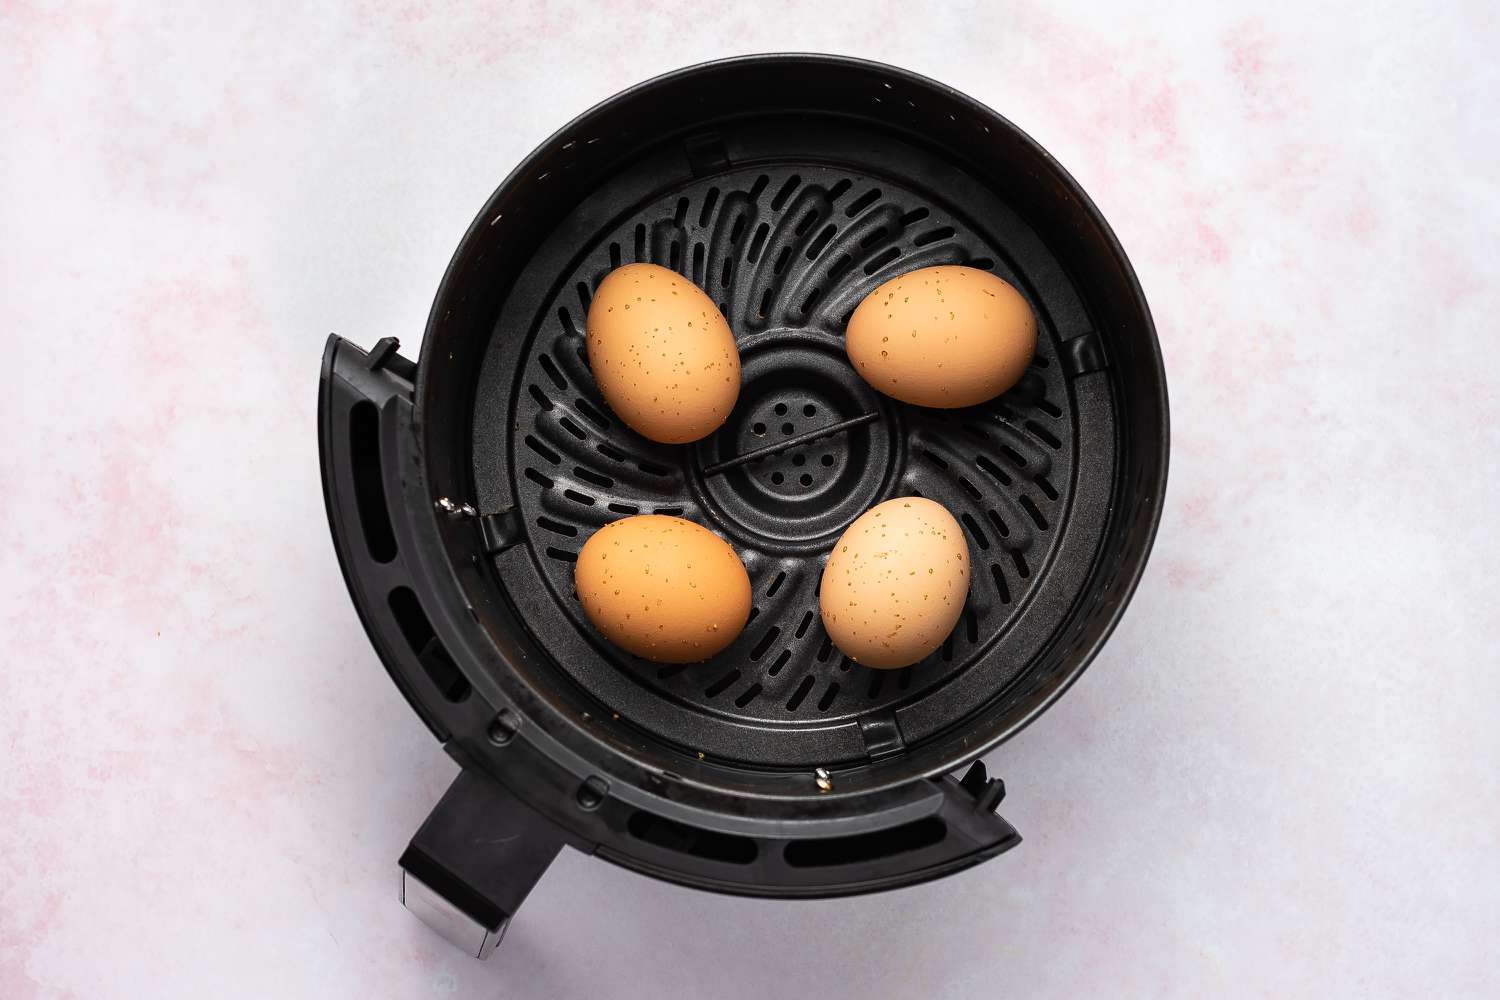 Preparing eggs in an air fryer